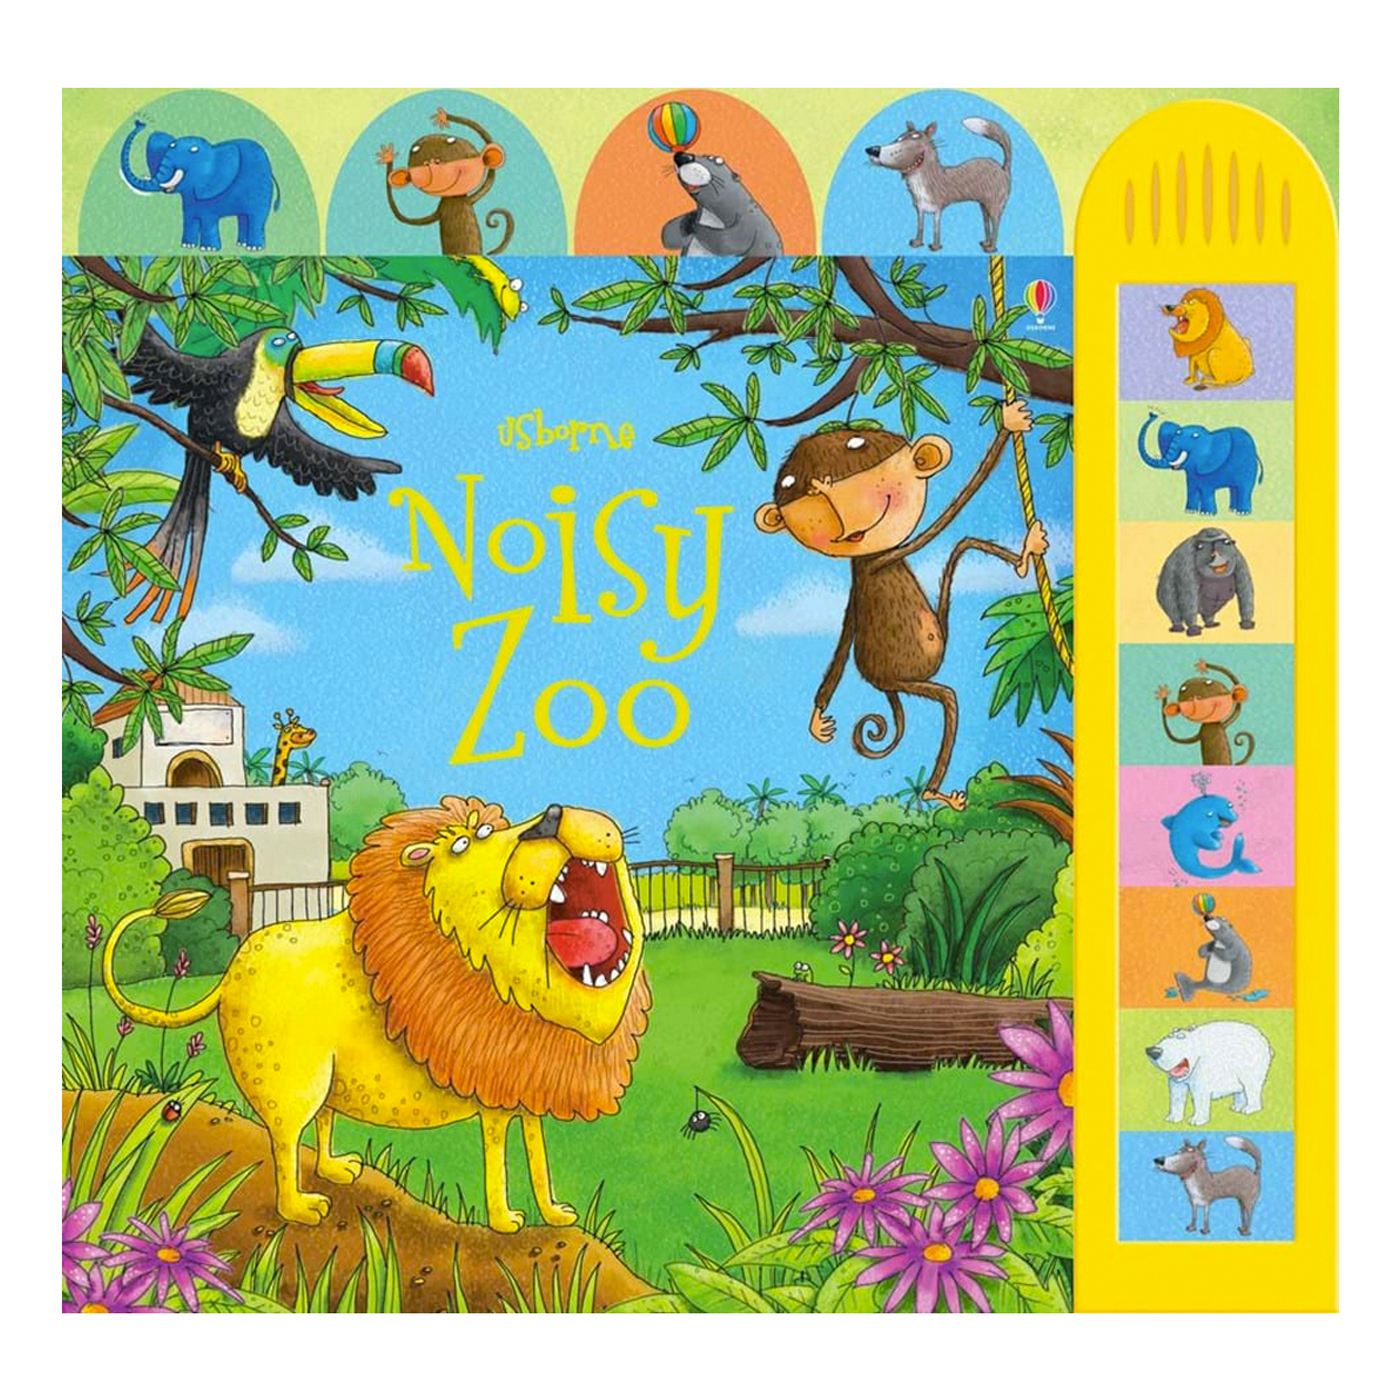  Noisy Zoo